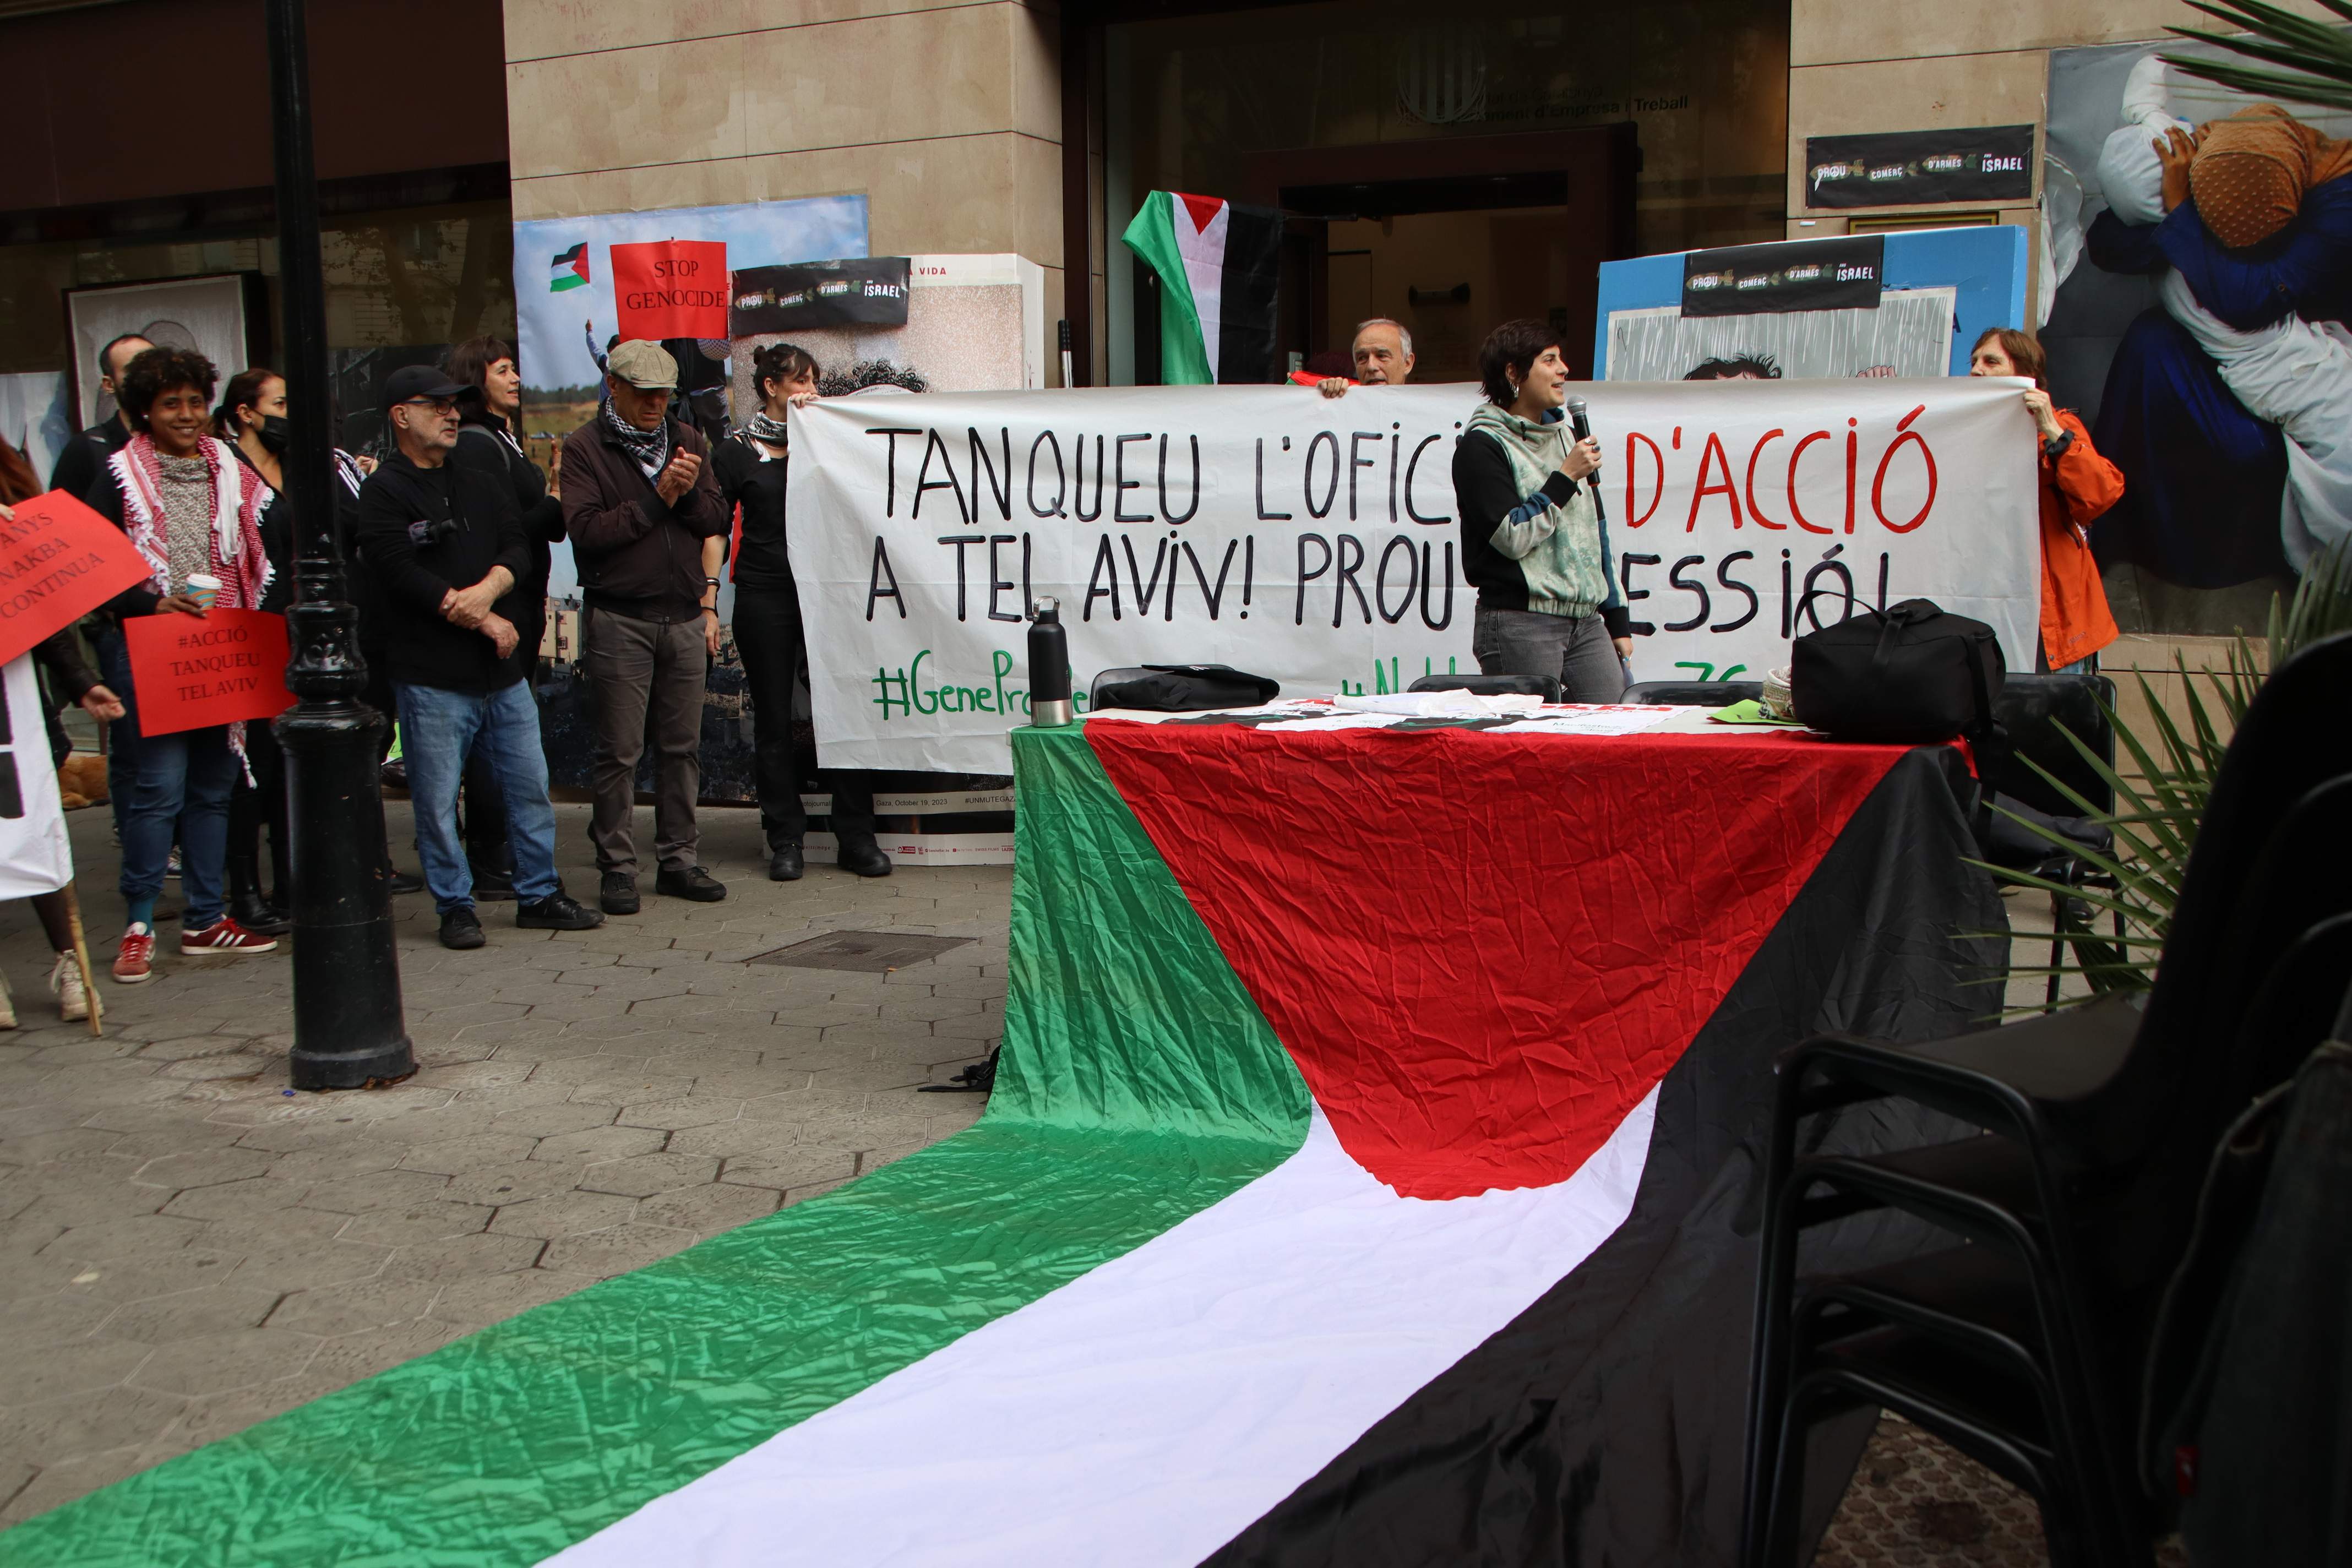 Activistas ocupan la sede de ACCIÓ para exigir la ruptura de relaciones con Israel